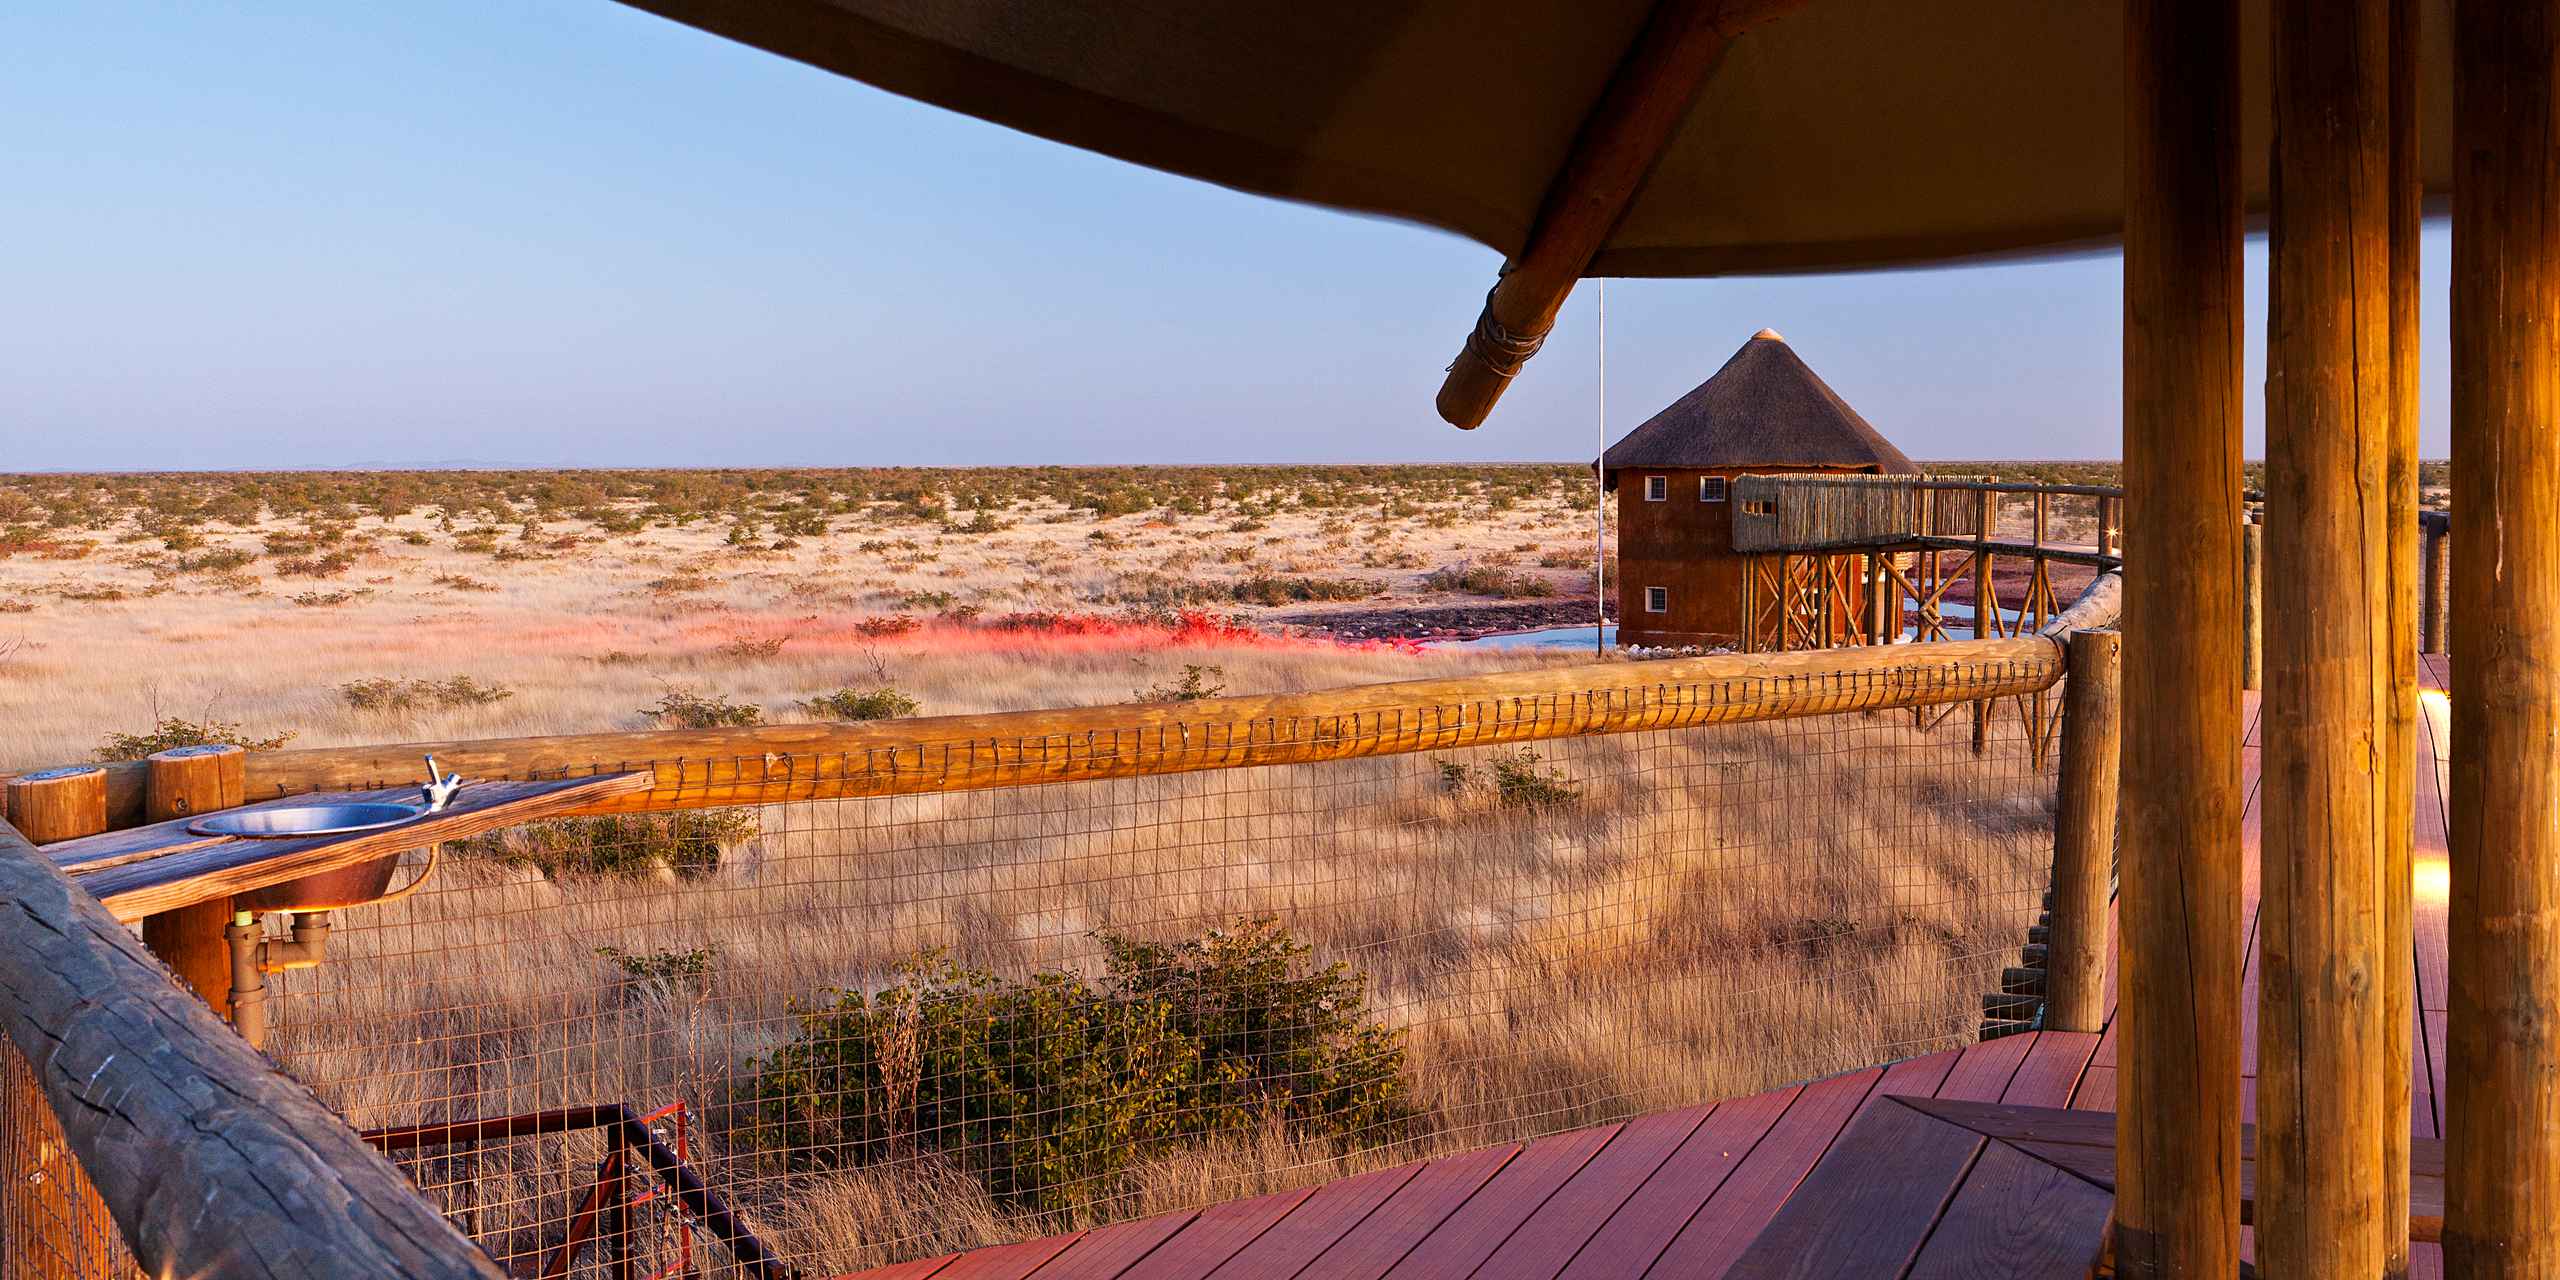 Olifantsrus Camp Etosha National Park, Namibia